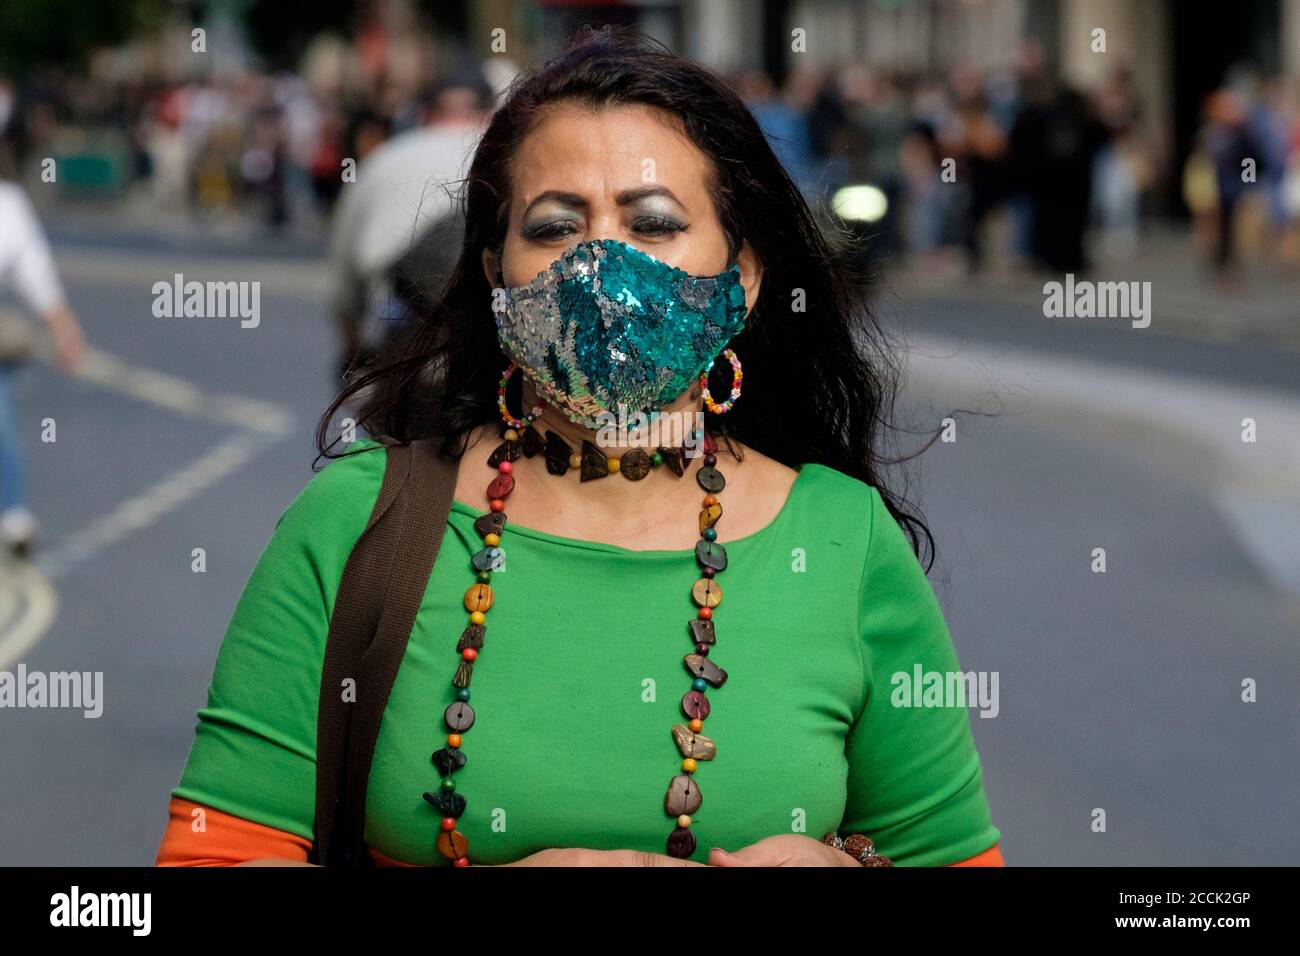 Frauen tragen Pailletten bedeckt Gesichtsmaske in der Straße, London Großbritannien Stockfoto